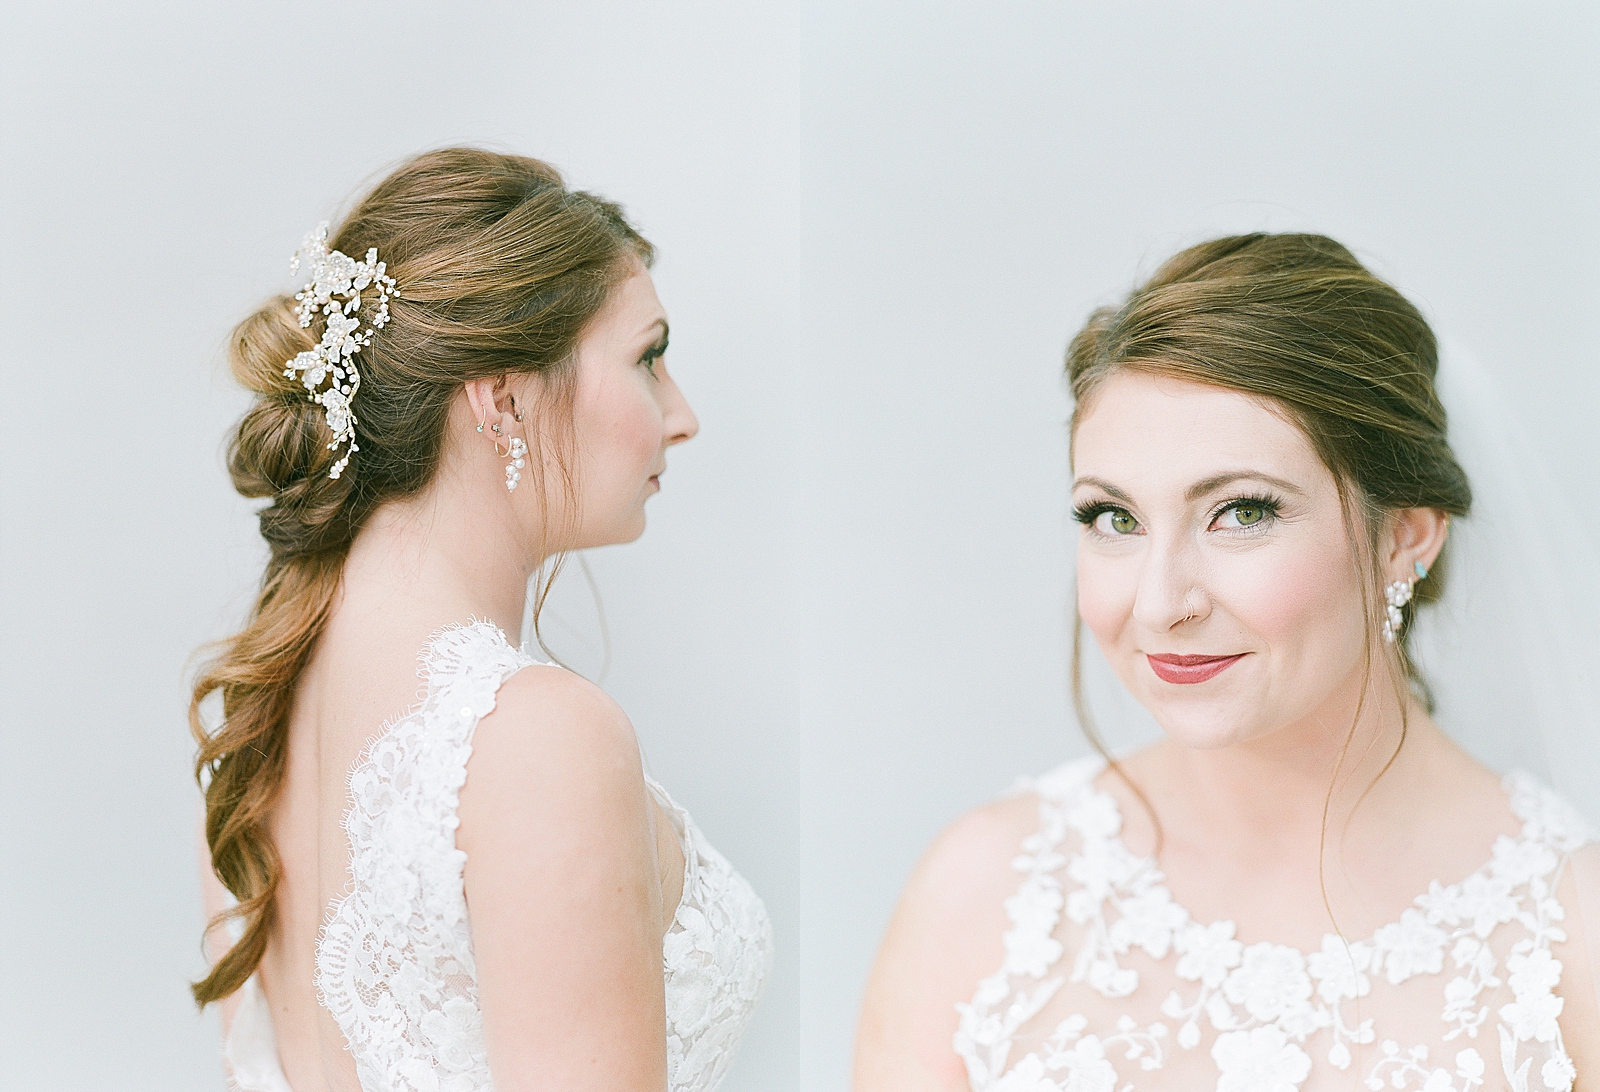 Asheville Bridal Editorial Brides Hair and Bride Smiling at Camera Photos